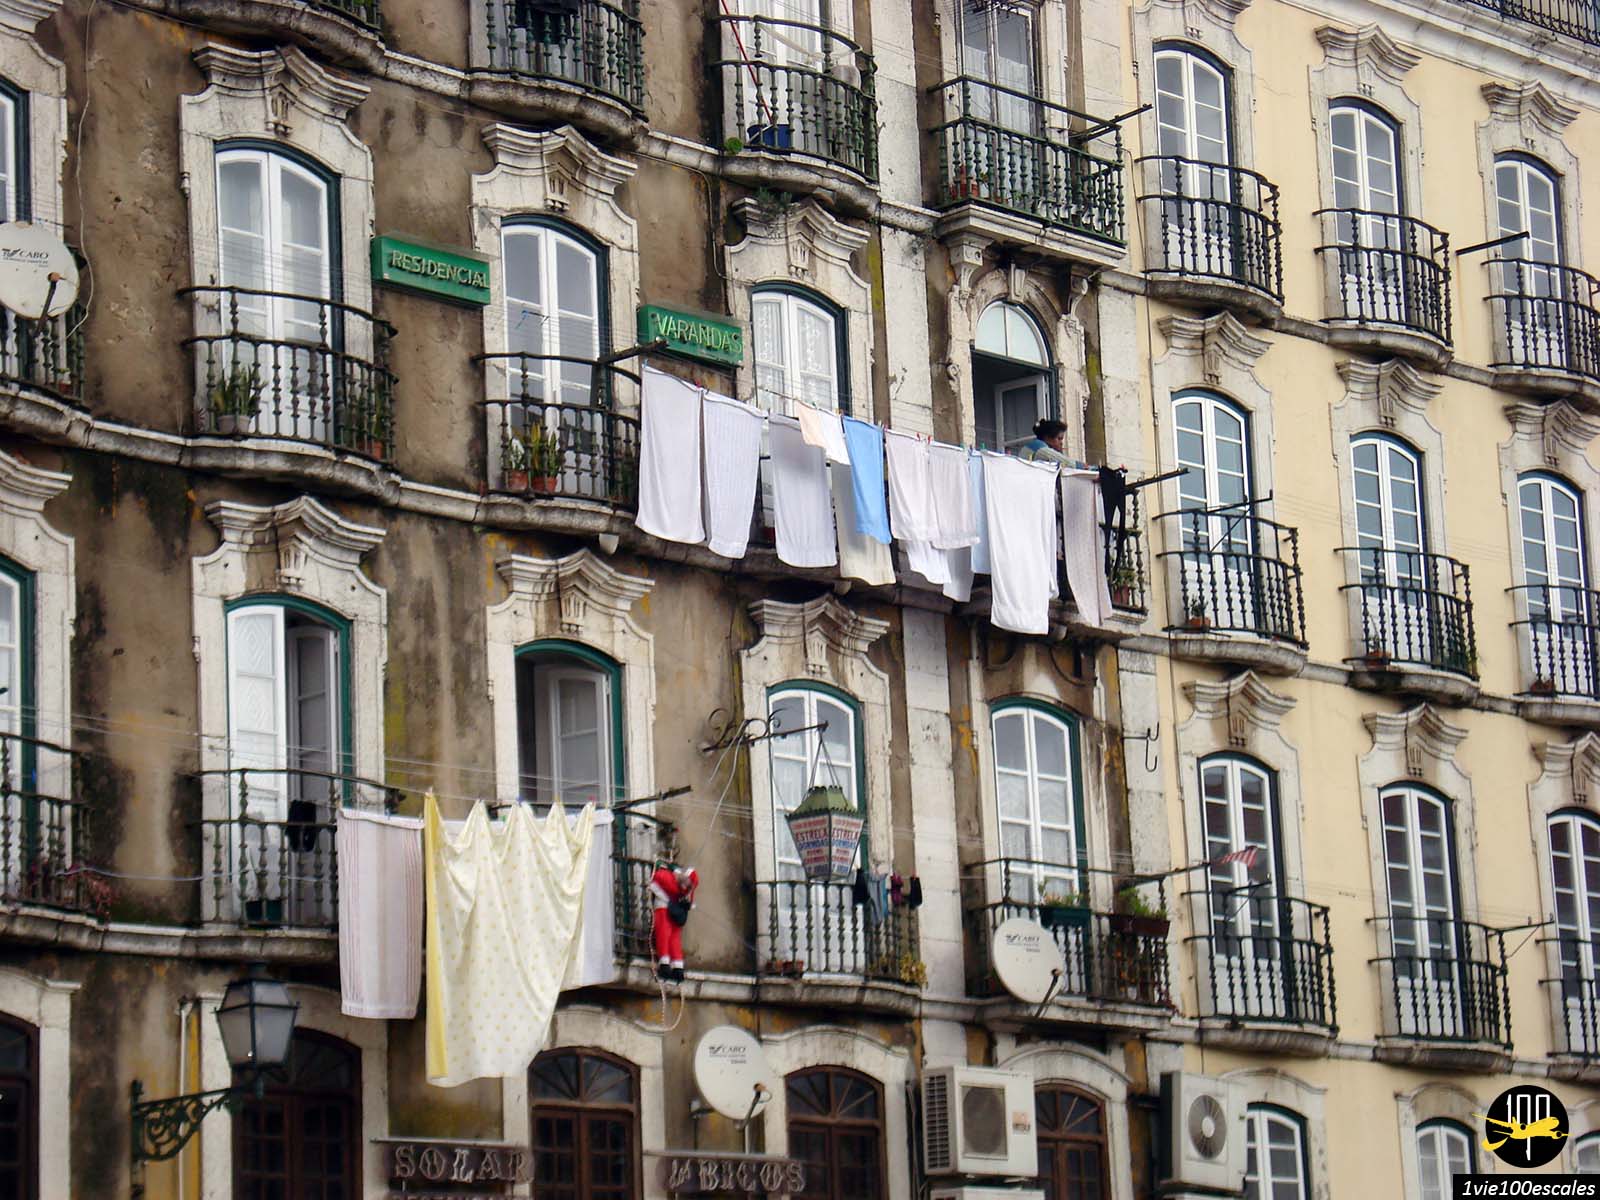 Les balcons et la façade historique de la Residencial Varandas de Lisbonne